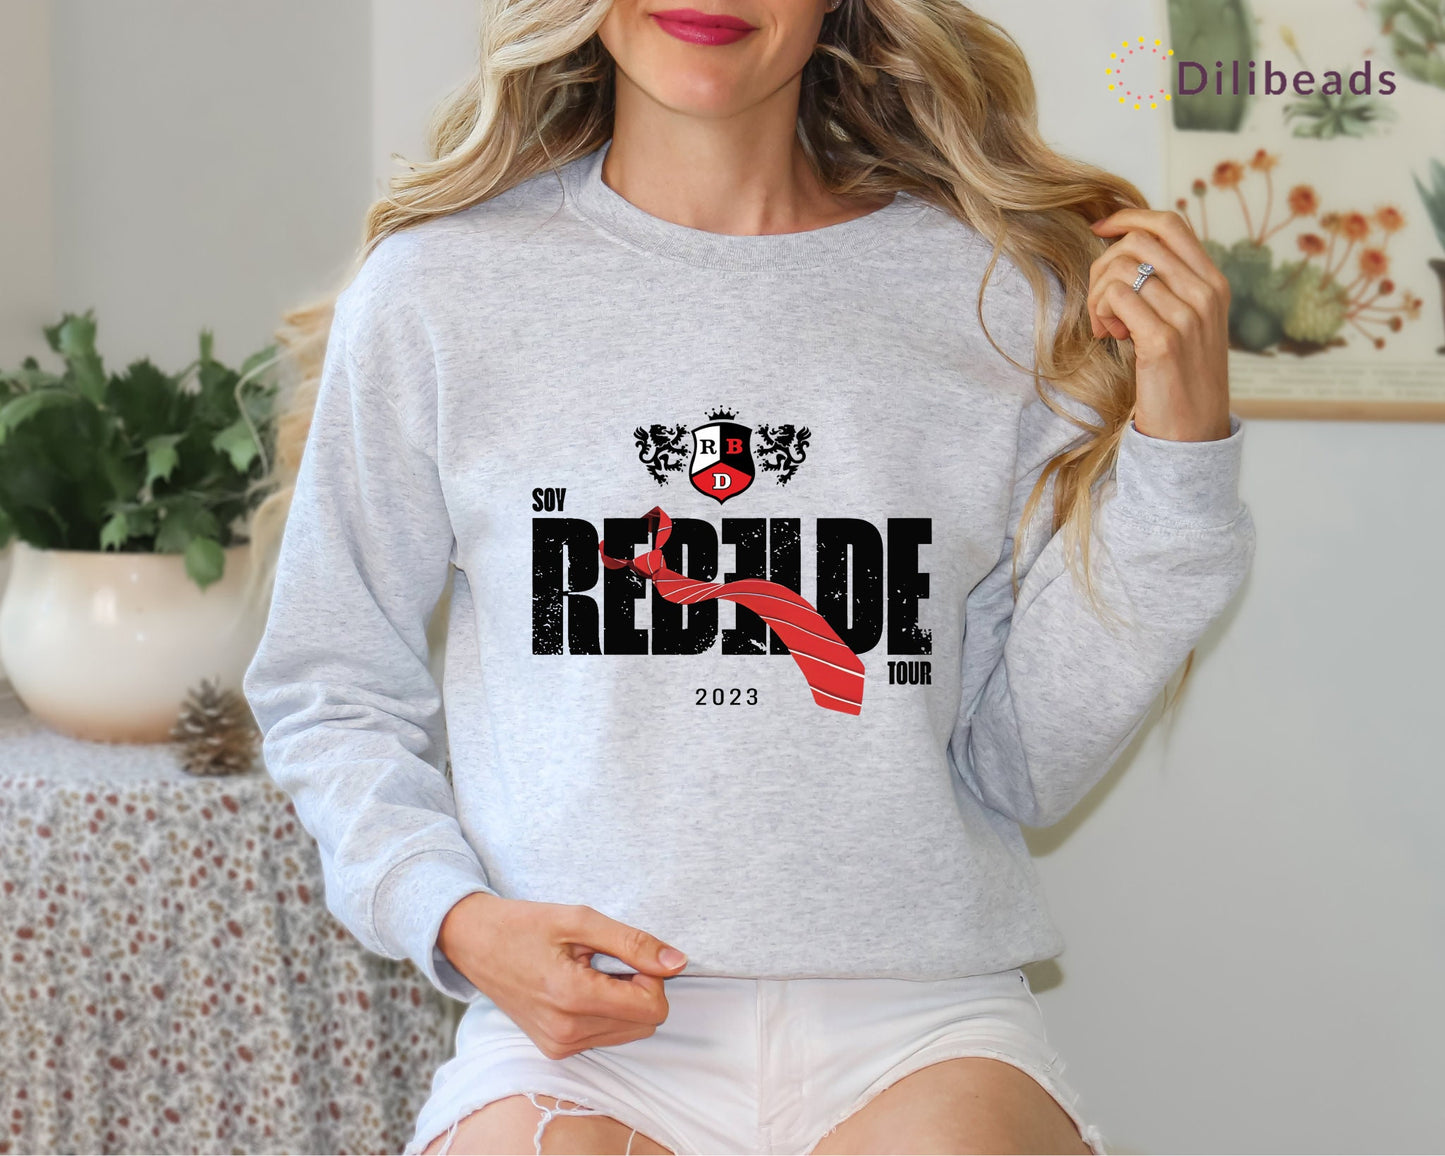 Rebelde Sweatshirt | Rebelde Shirt | Rebelde Clothing | Rebelde Fan Gift | RBD Fan Shirt | RBD Merch | RBD Fan Apparel | Best Christmas Gift